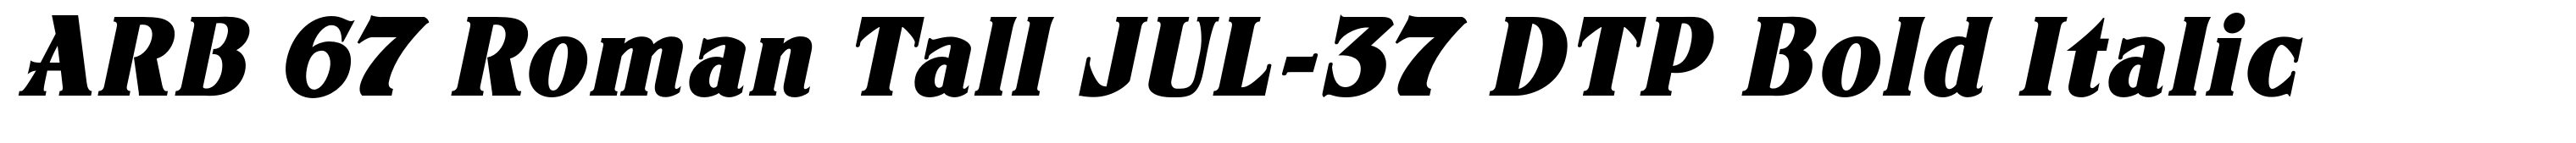 ARB 67 Roman Tall JUL-37 DTP Bold Italic